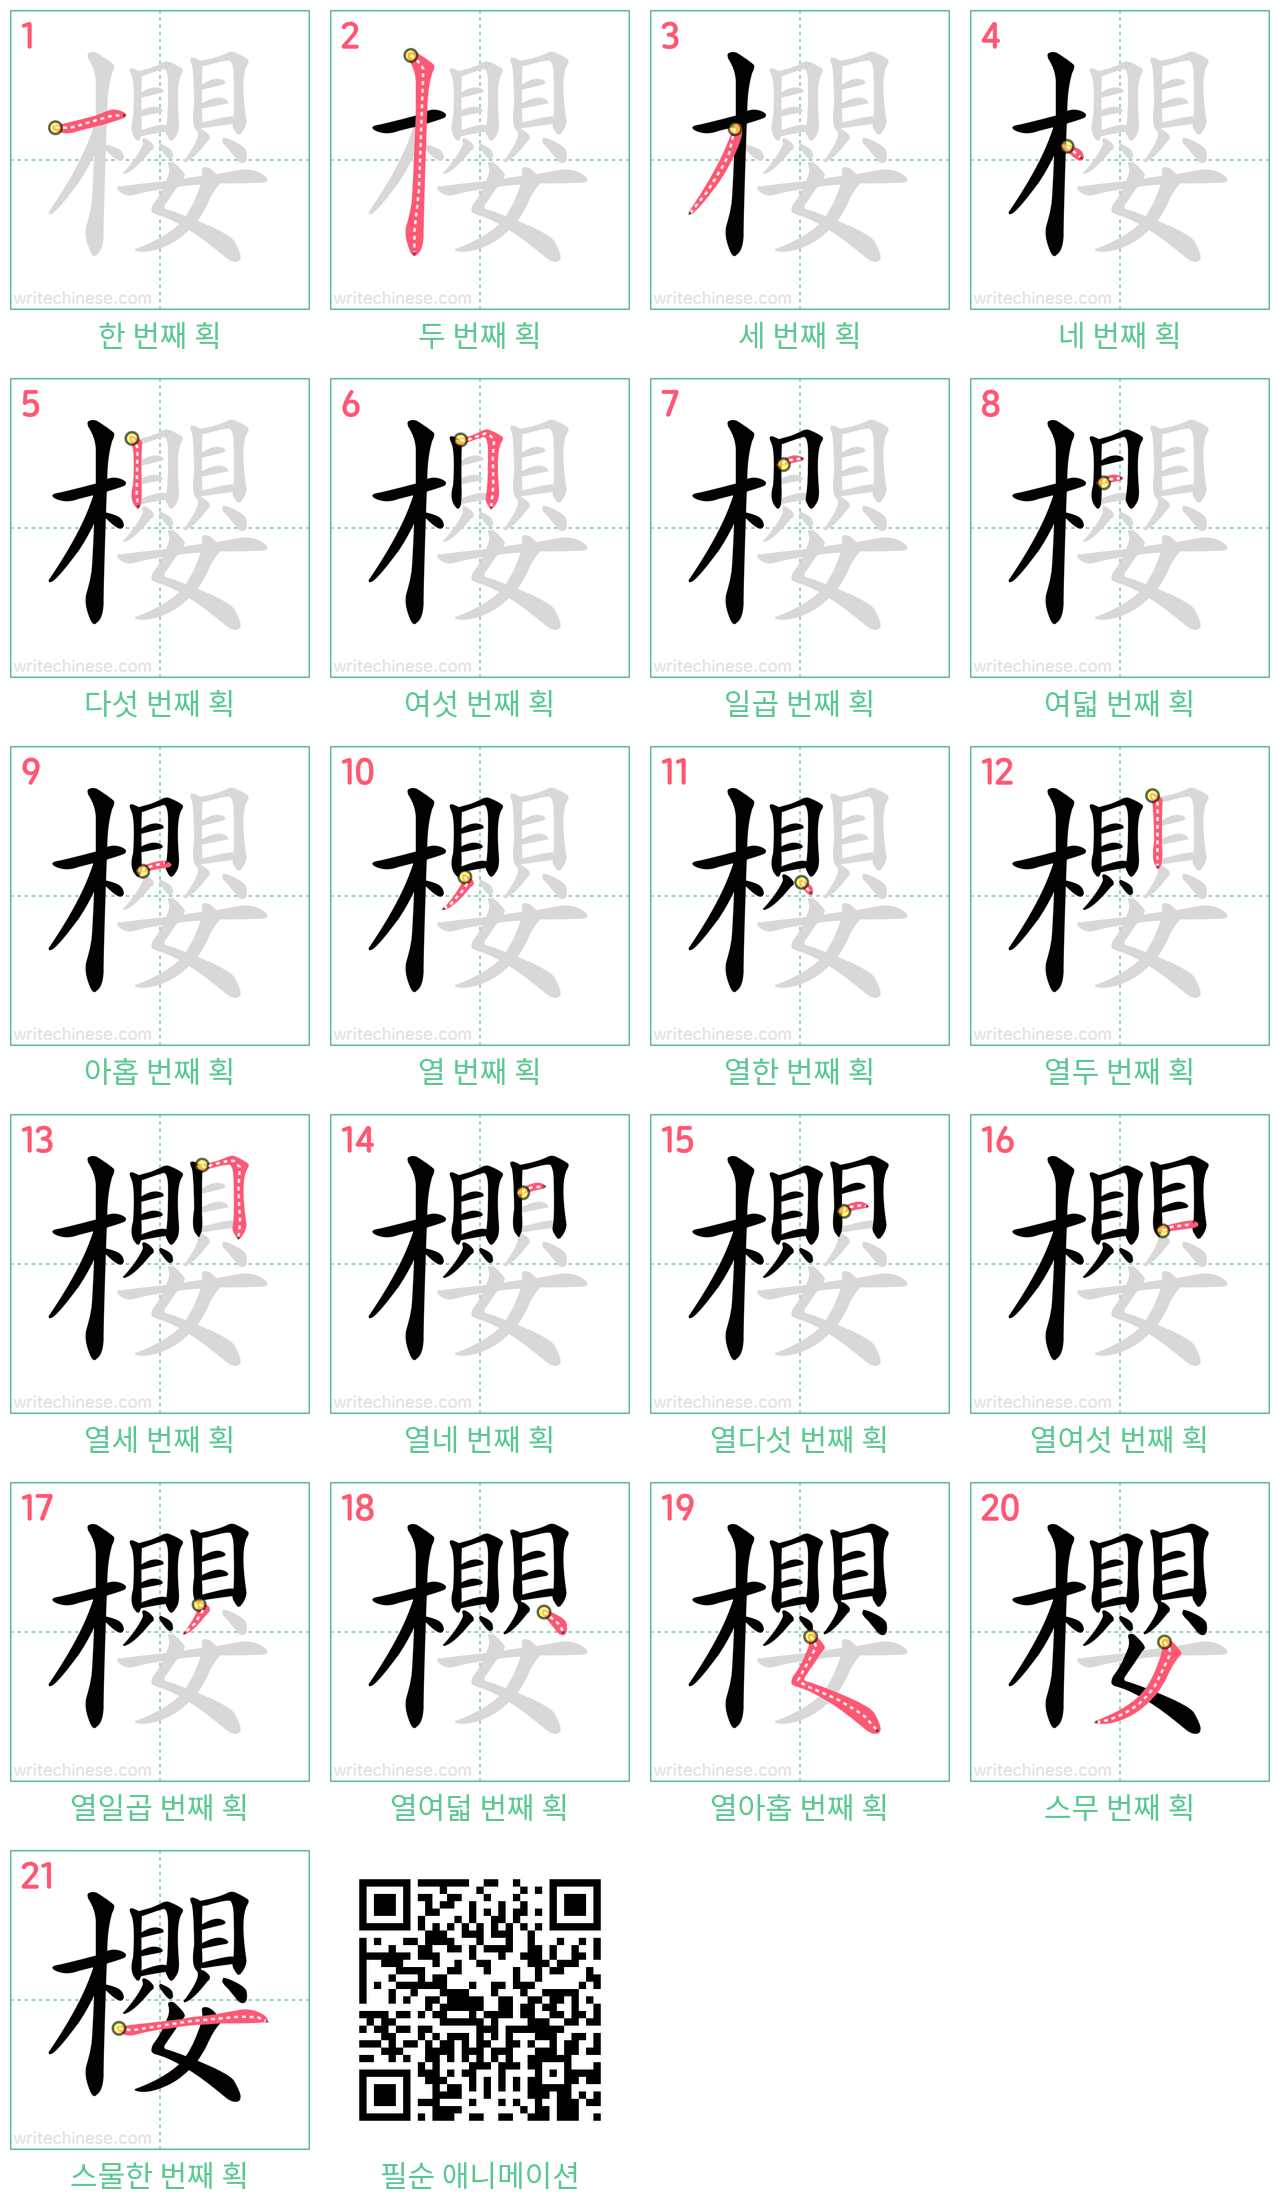 櫻 step-by-step stroke order diagrams